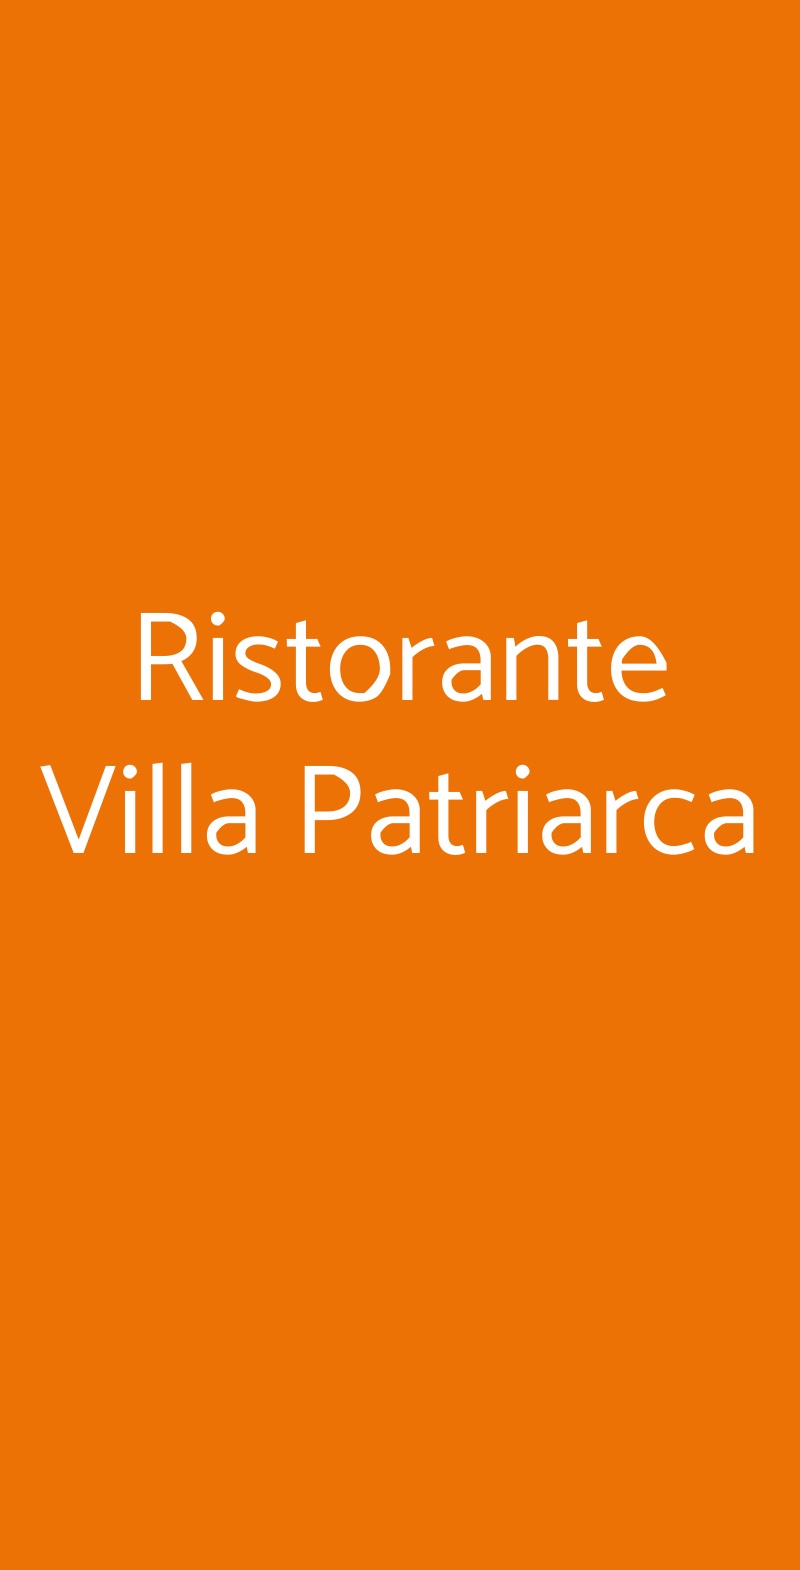 Ristorante Villa Patriarca Mirano menù 1 pagina